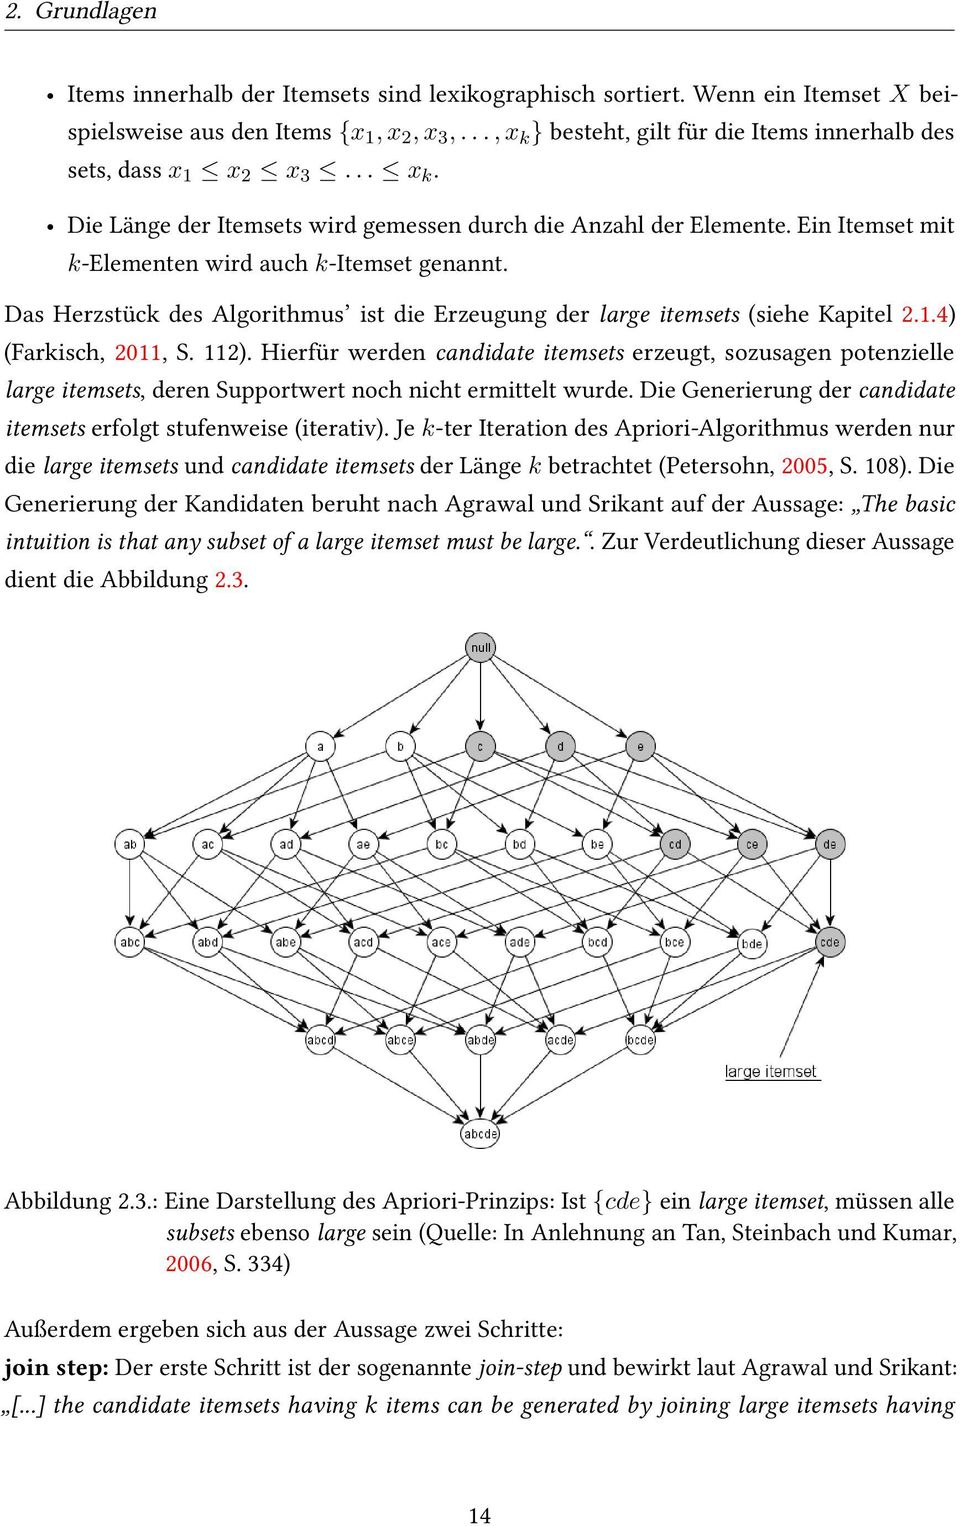 Ein Itemset mit k-elementen wird auch k-itemset genannt. Das Herzstück des Algorithmus ist die Erzeugung der large itemsets (siehe Kapitel 2.1.4) (Farkisch, 2011, S. 112).